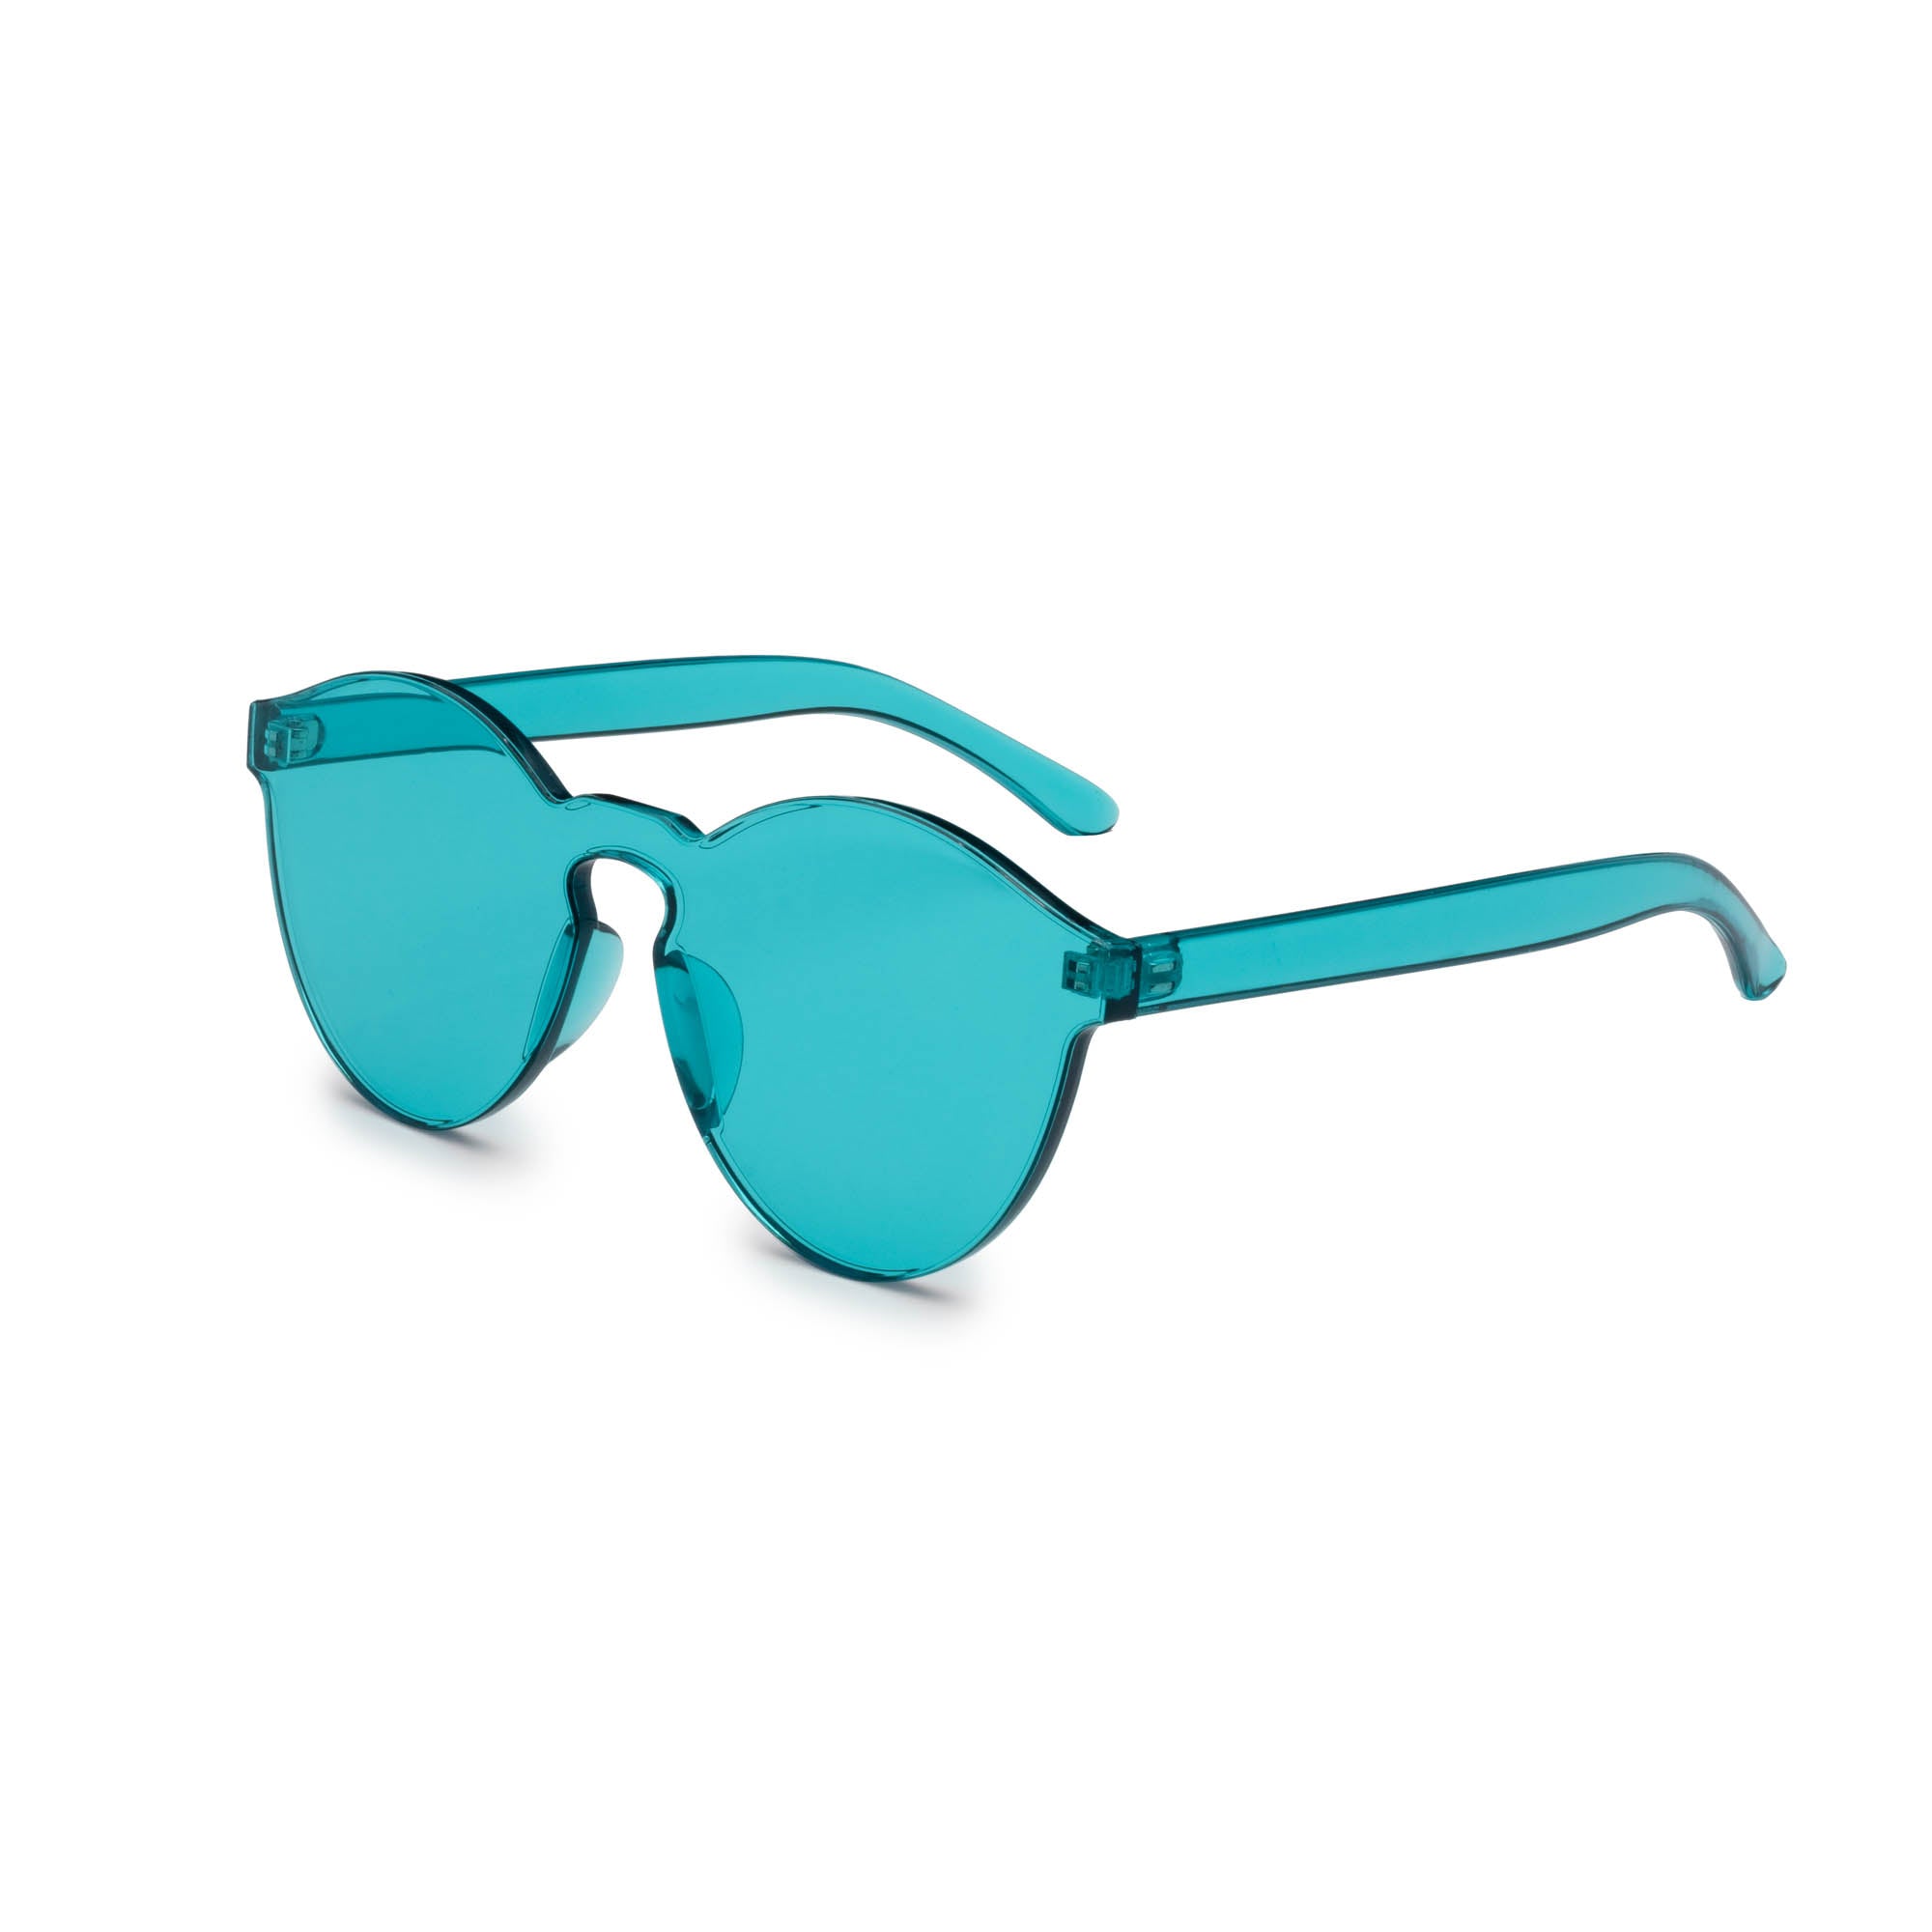 Turquoise Spectrum Spectacles Sunglasses